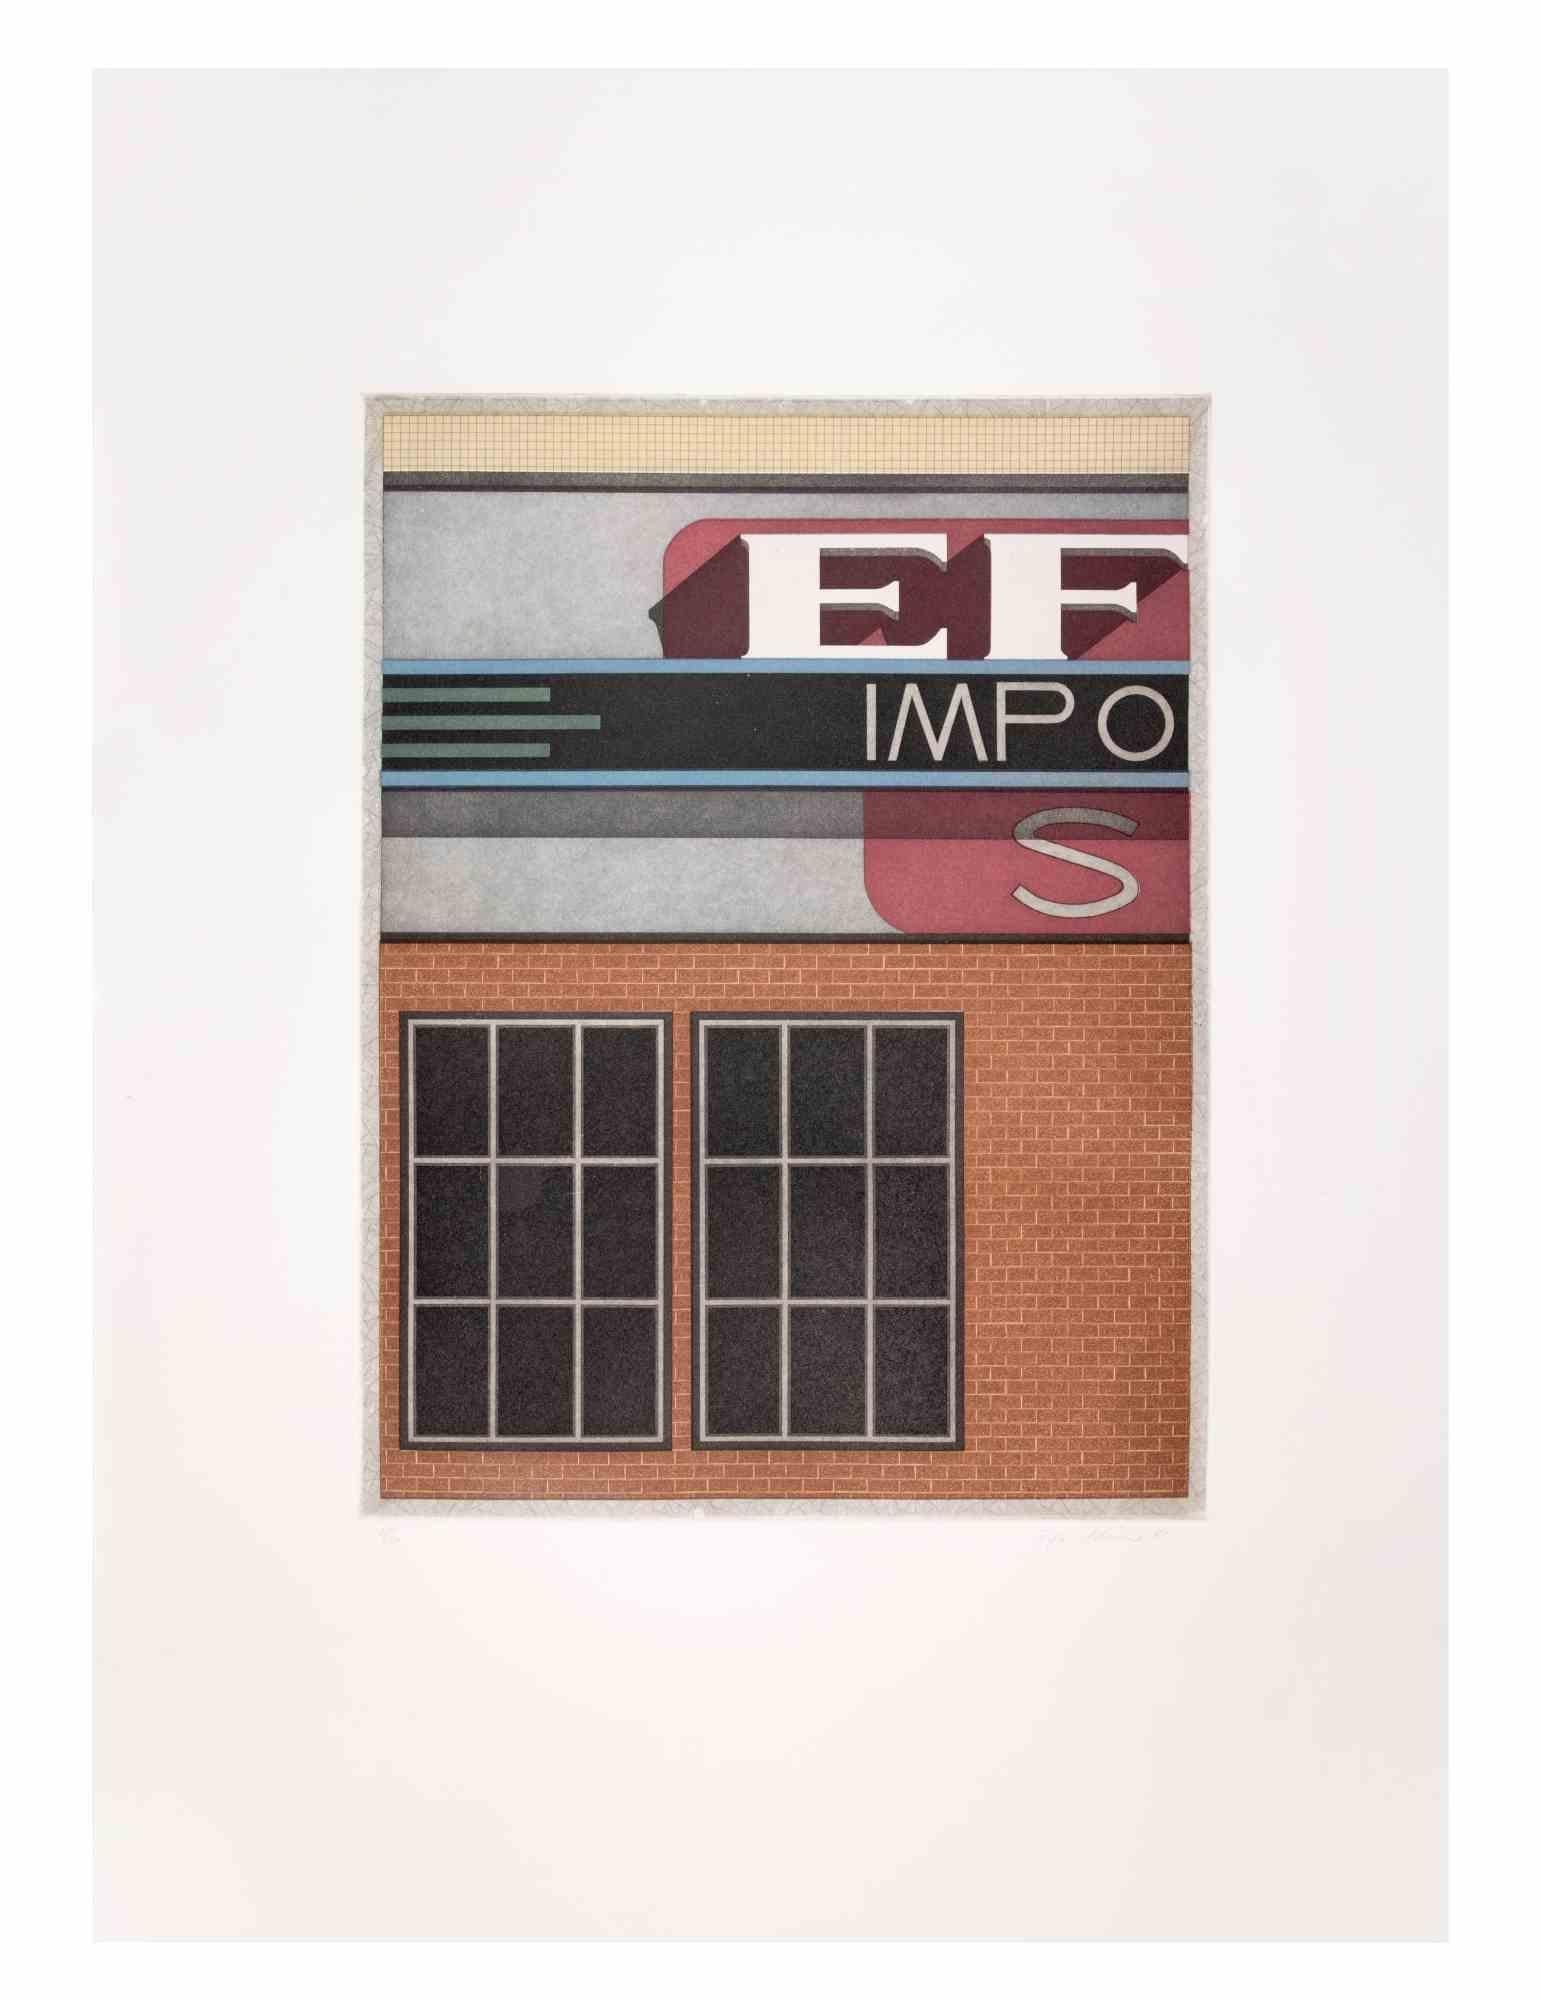 Garage Impo est une œuvre d'art contemporain réalisée par l'artiste Fifo Stricker en 1982.

Aquatinte et gravure en couleurs mixtes. 

Signé et daté à la main par l'artiste dans la marge inférieure droite.

Numéroté dans la marge inférieure gauche.